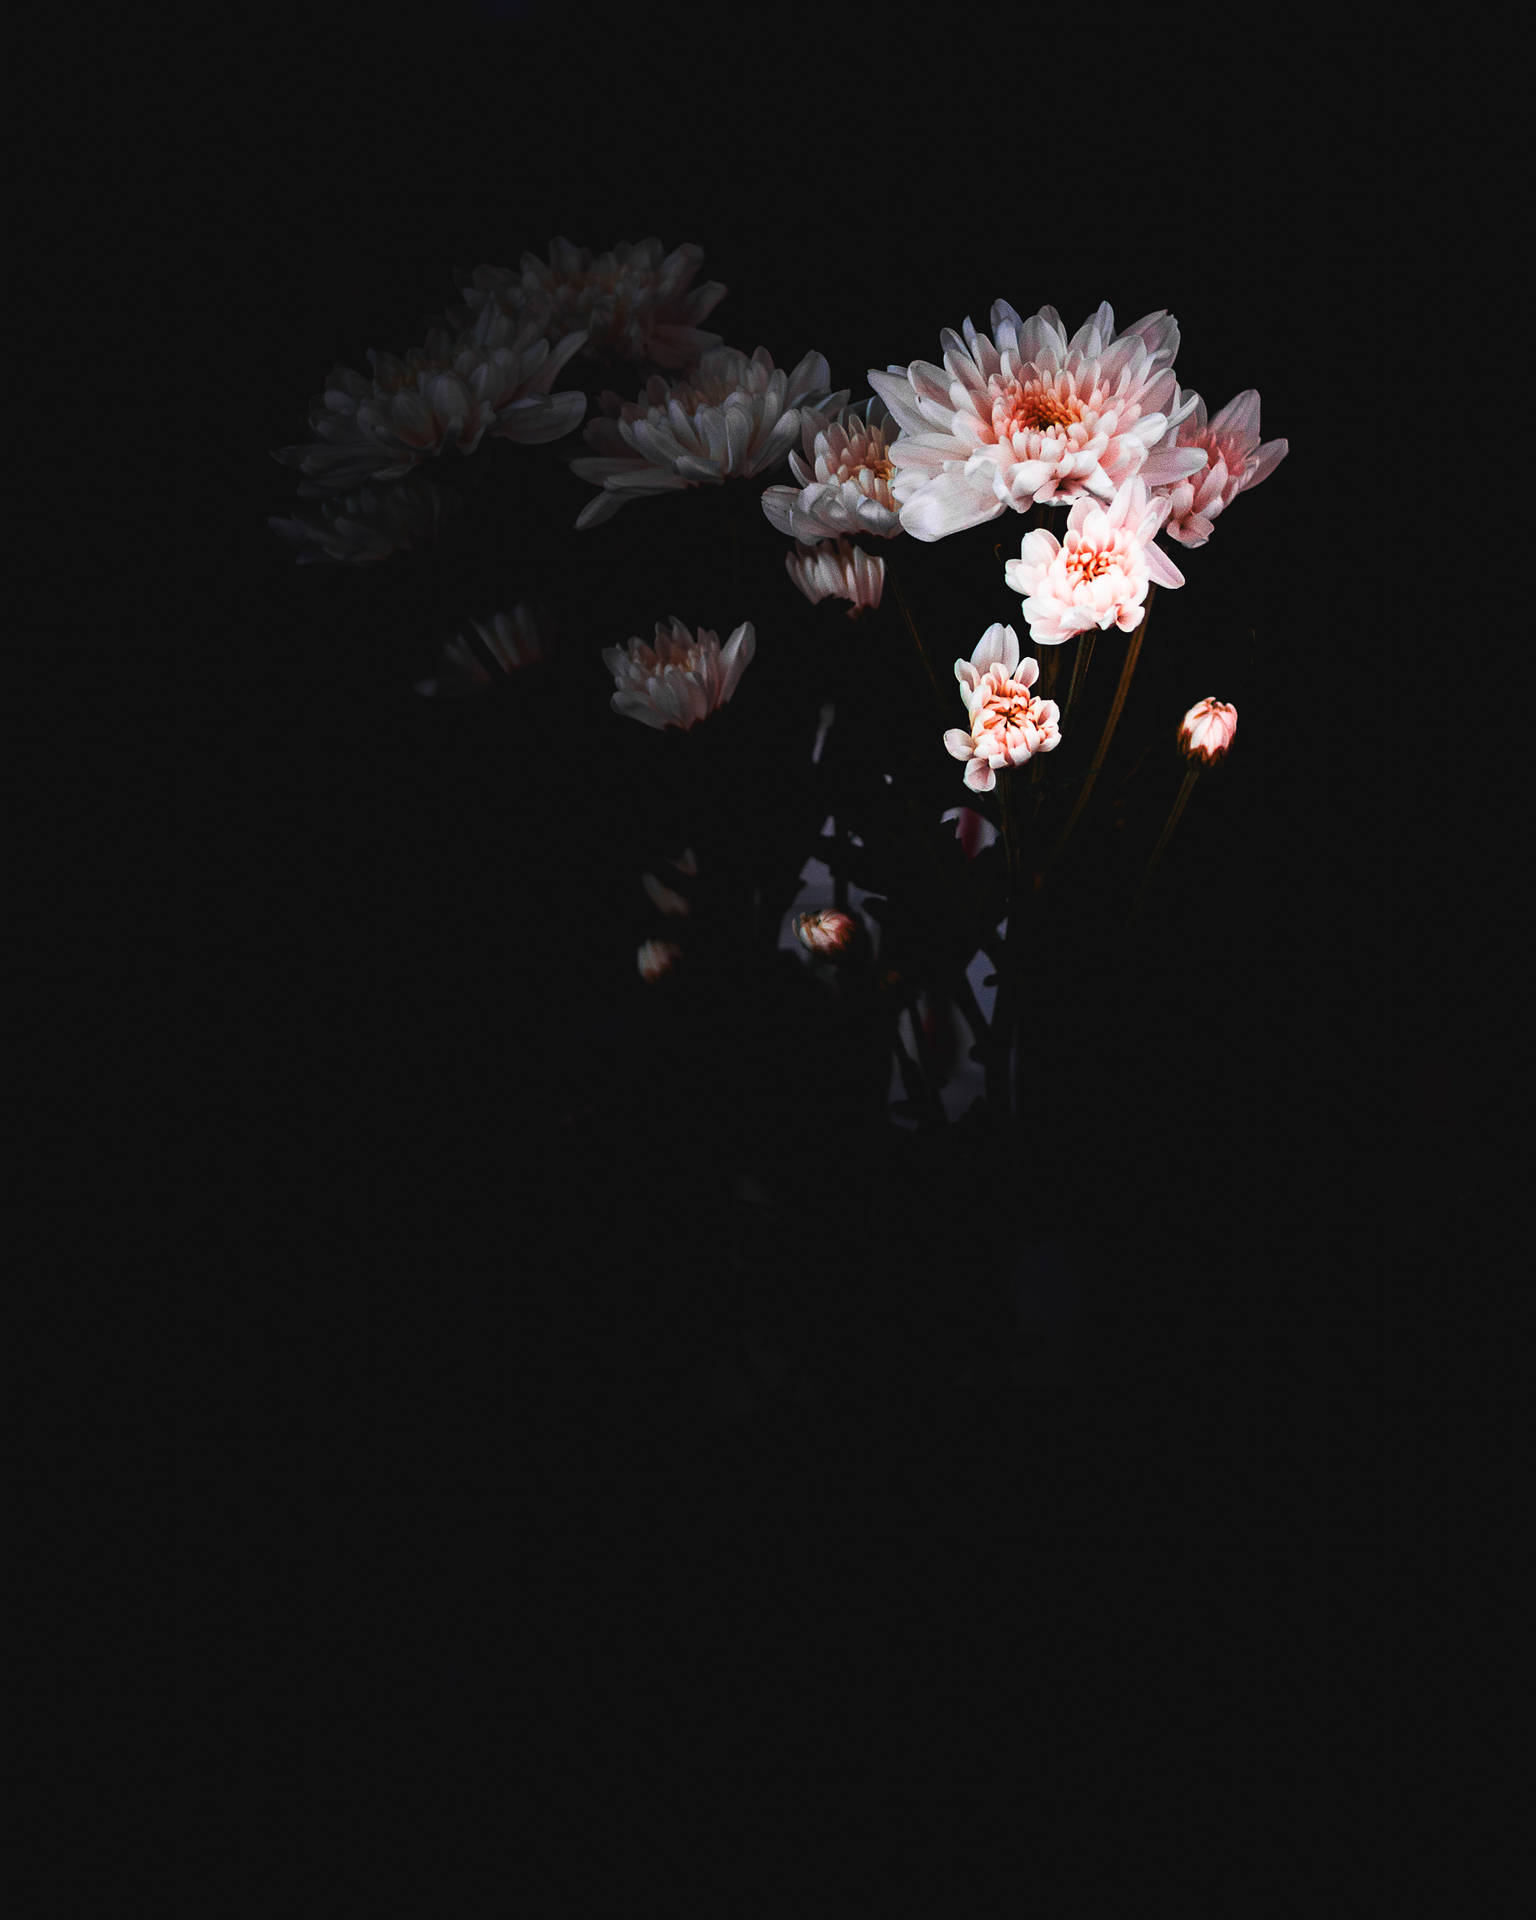 Einevase Mit Blumen Im Dunkeln Wallpaper